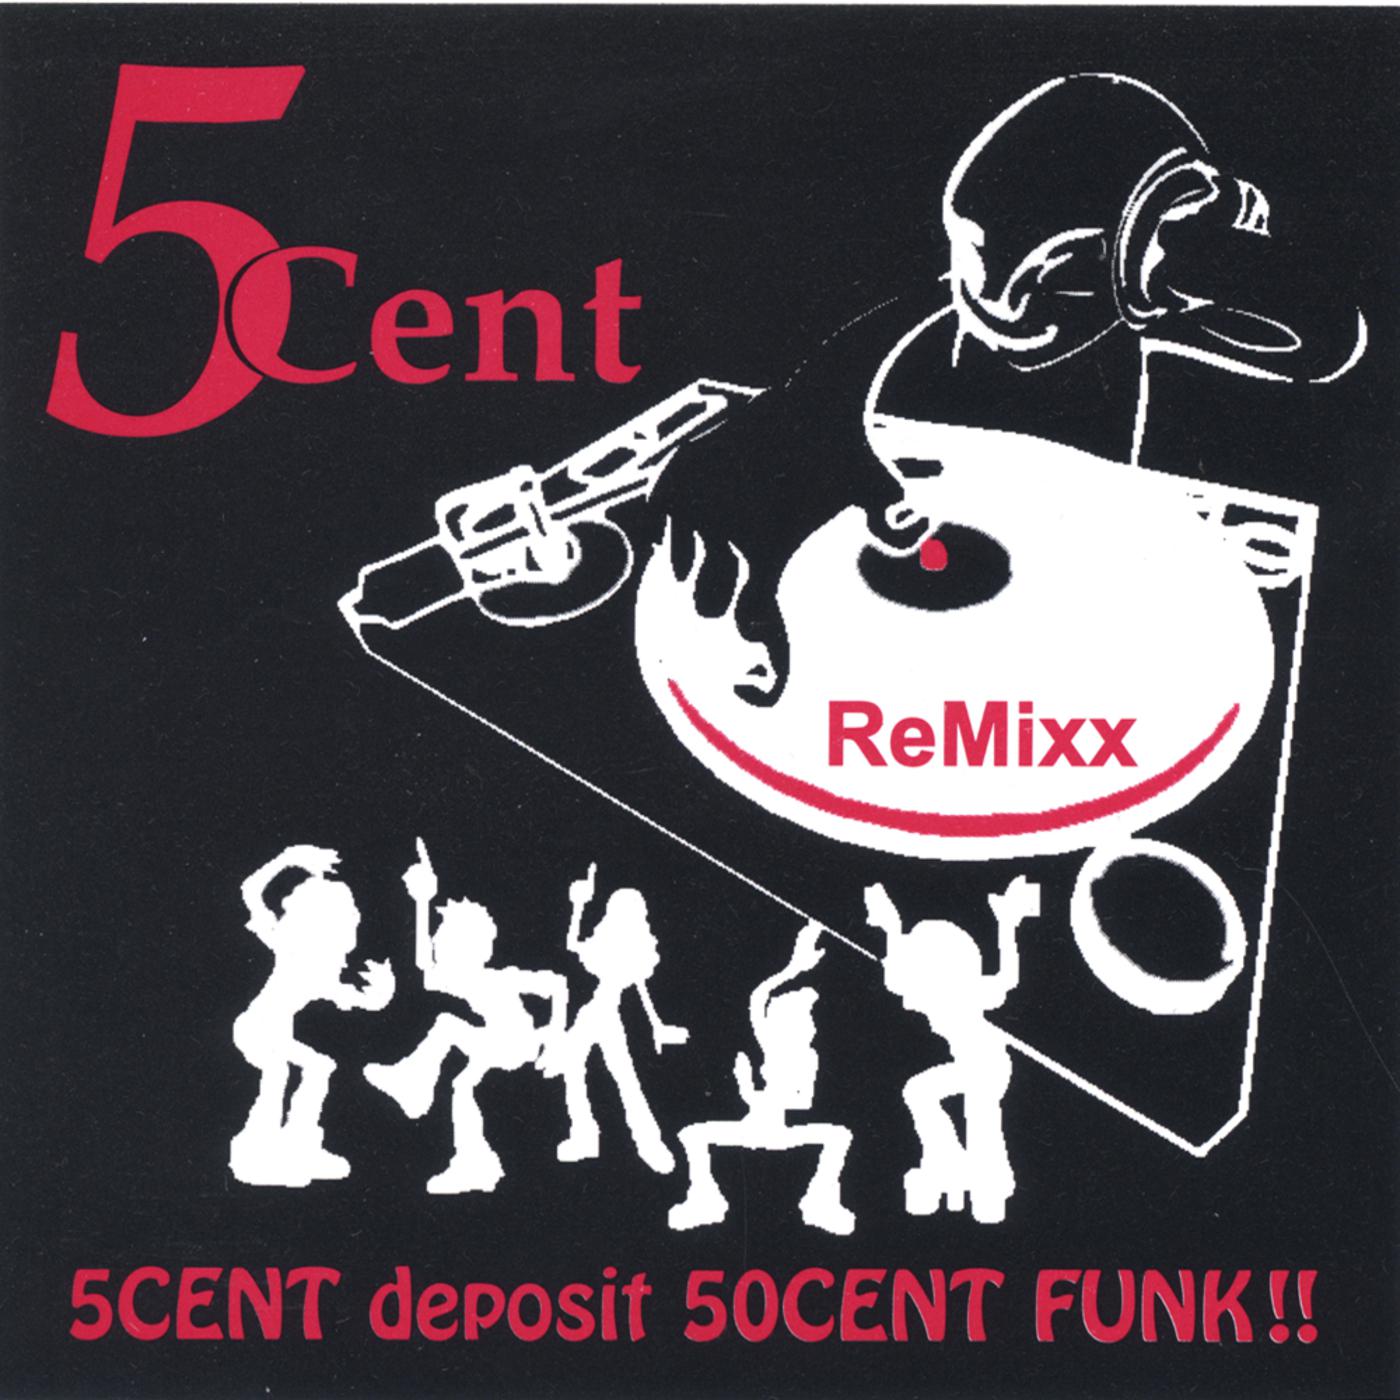 5CENT deposit 50CENT FUNK!! - ReMixx ***** Magic MANGOSTEEN